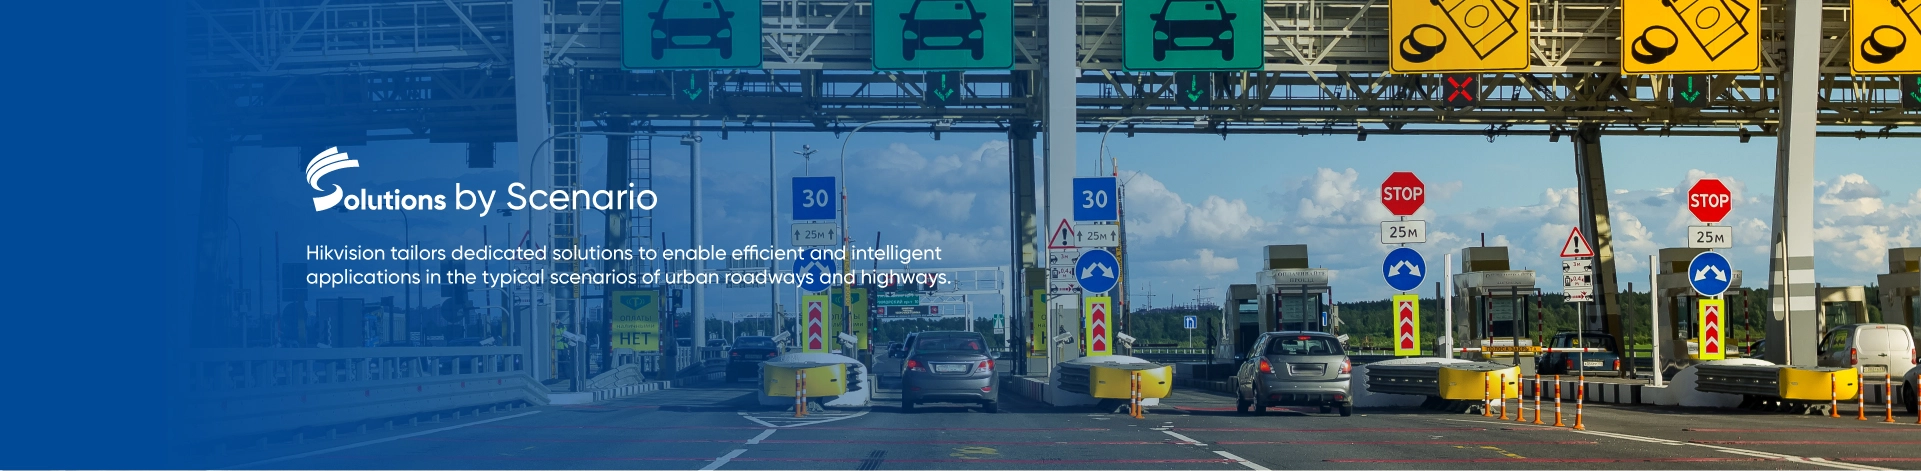 Hikvision מתאימה פתרונות ייעודיים כדי לאפשר יעילות ואינטליגנציה בתרחישי הכביש העירוני והכביש המהיר הנפוצים ביותר.